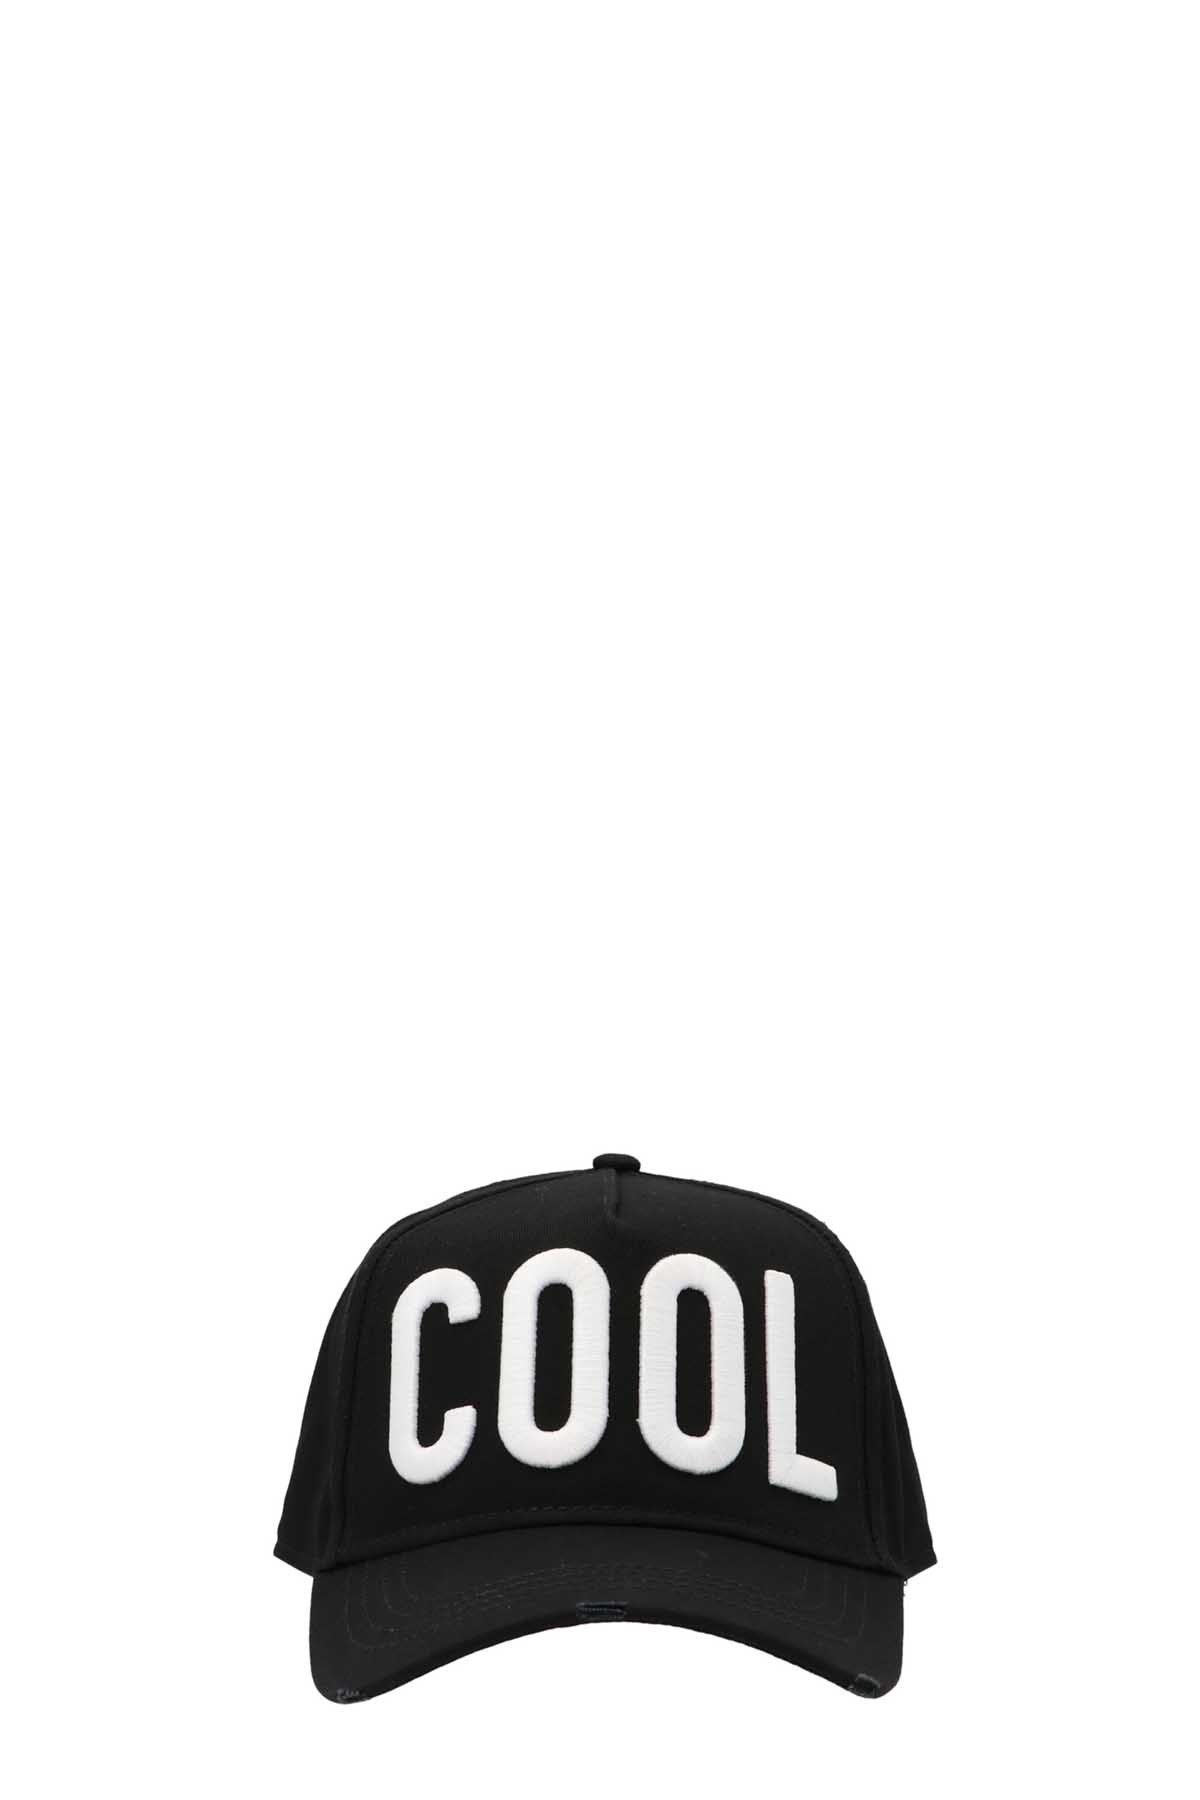 DSQUARED2 'Cool’ Cap